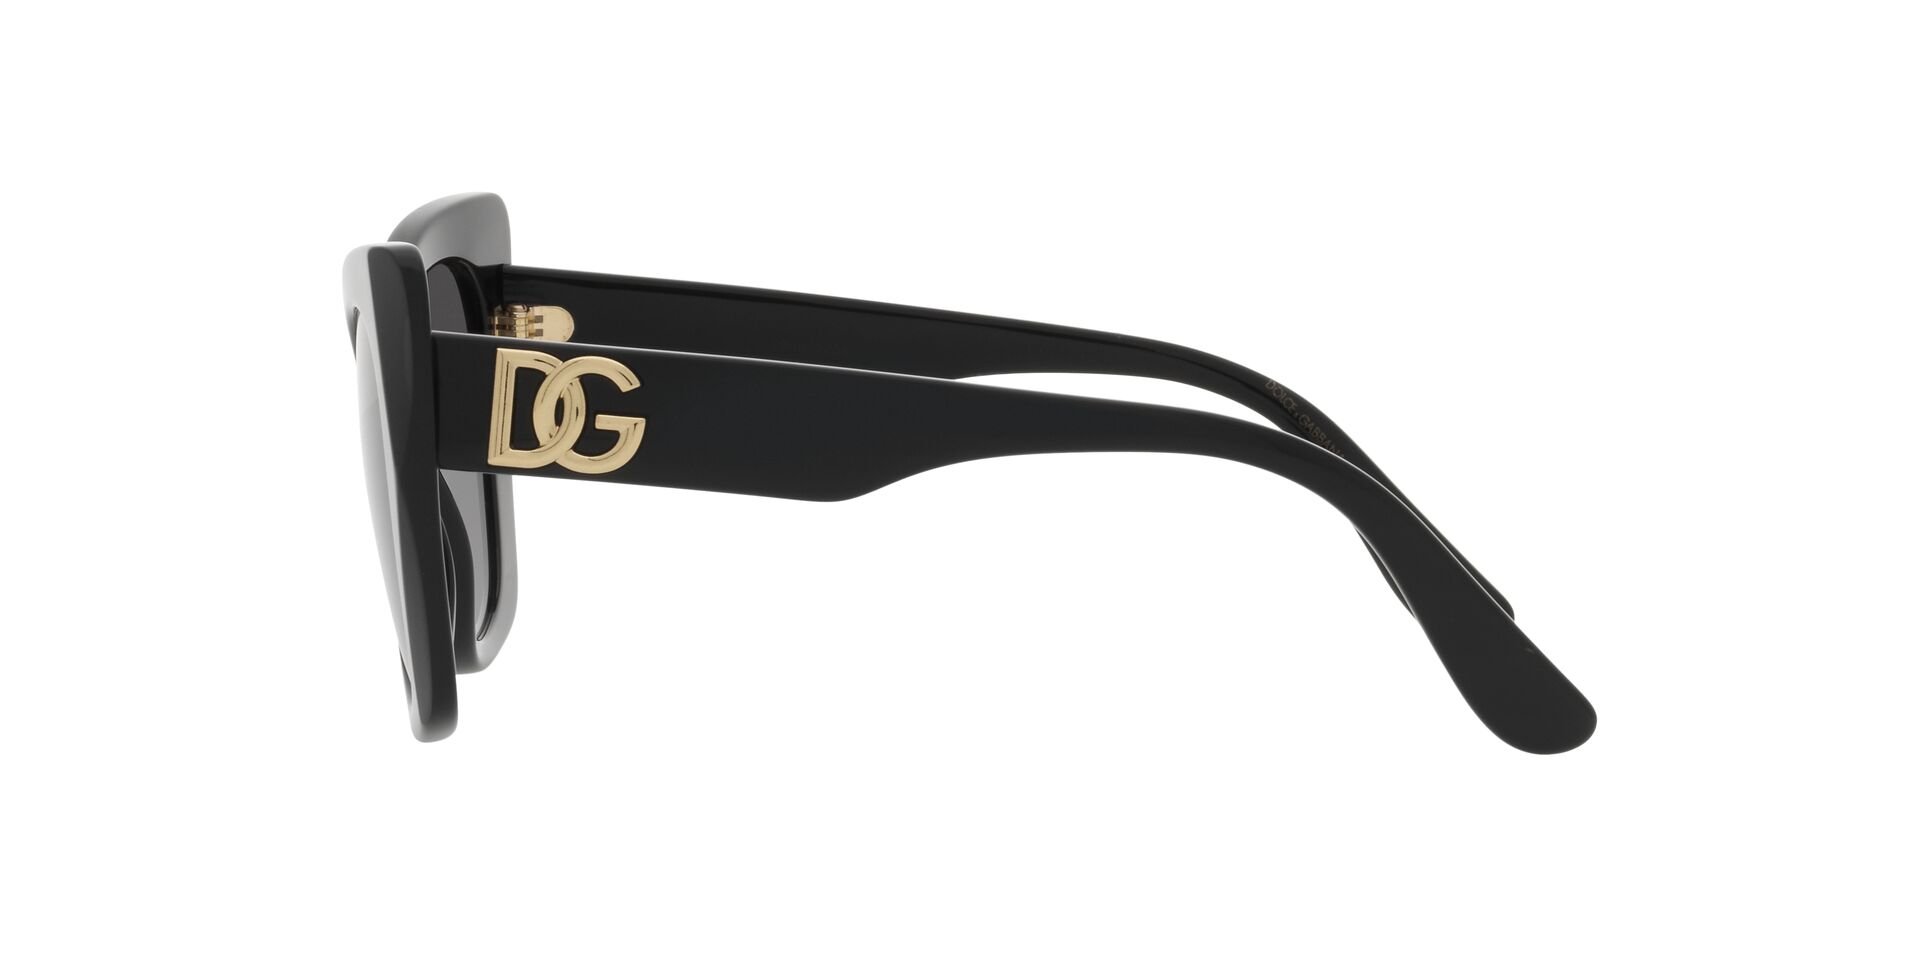 Dolce & Gabbana Sonnenbrille in Schwarz DG4405 501/8G 53